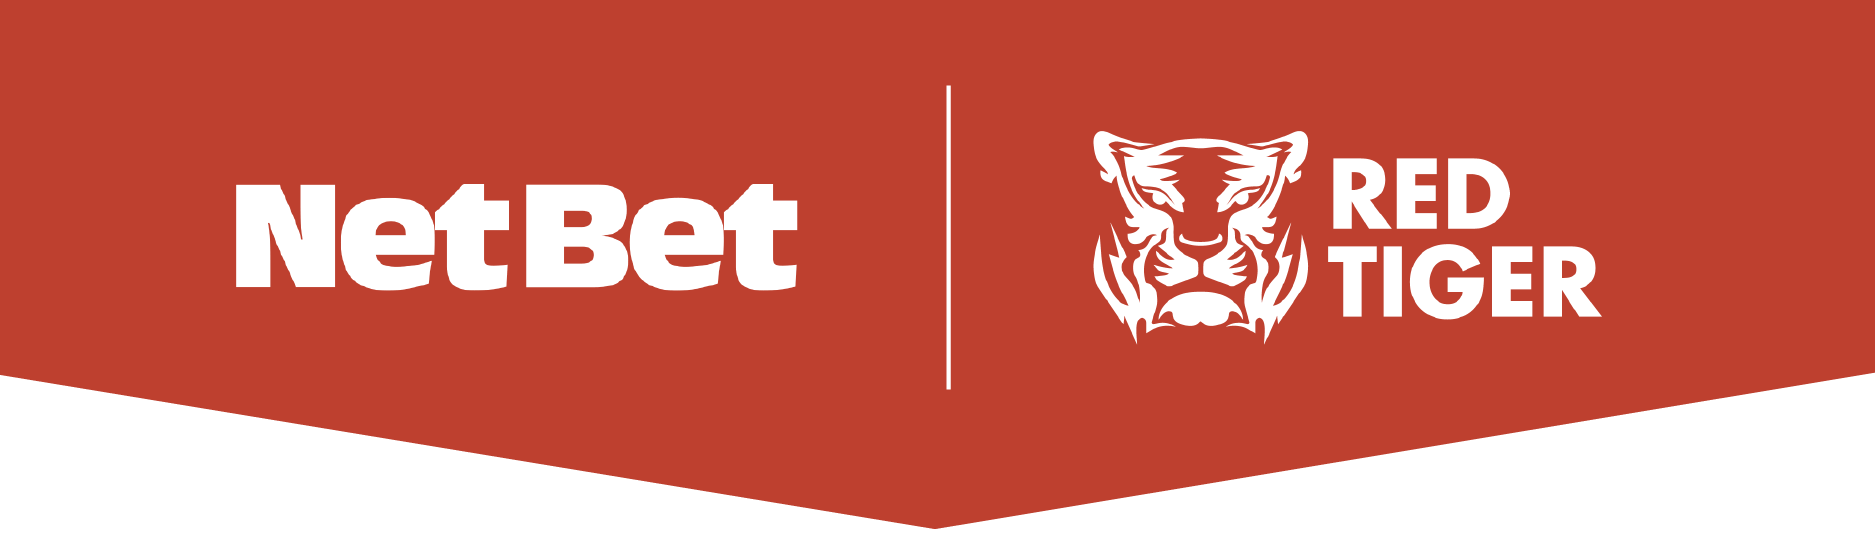 NetBet Italia dà il benvenuto ai giochi Red Tiger